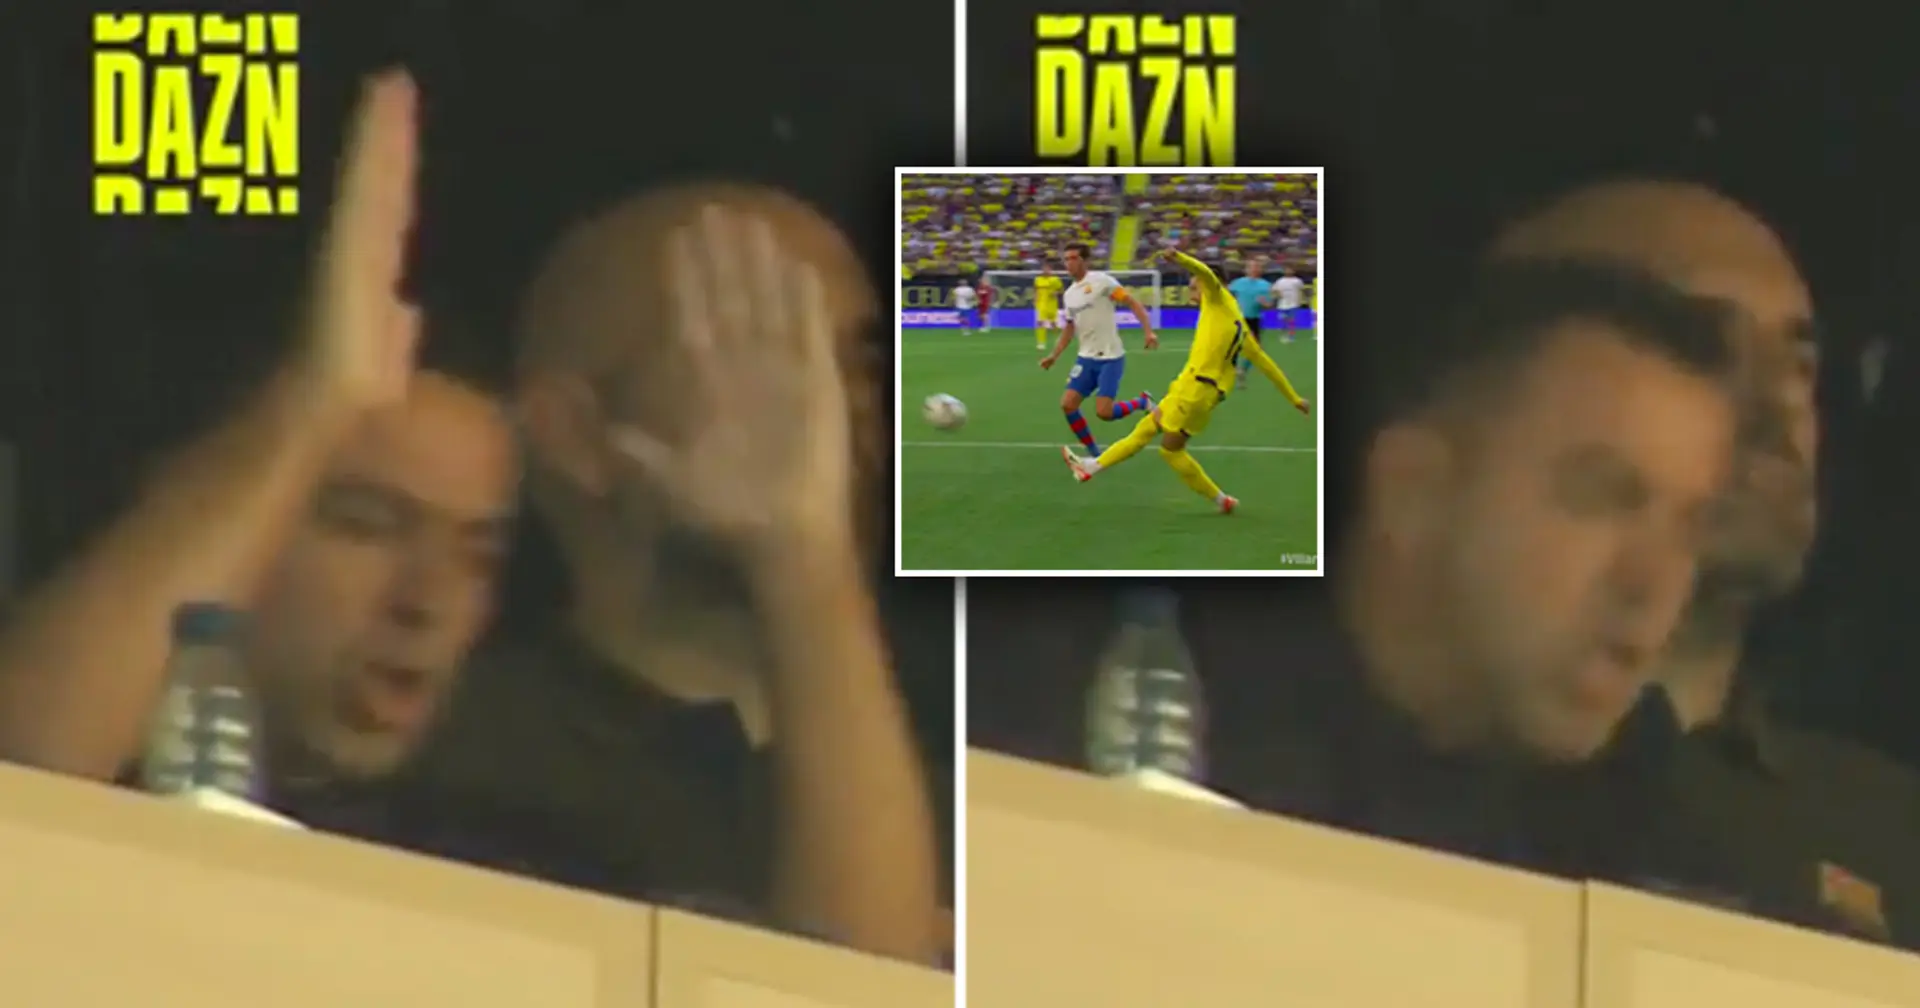 La réaction de Xavi face à Villarreal qui prend l'avantage contre le Barça repérée, ça fait peur